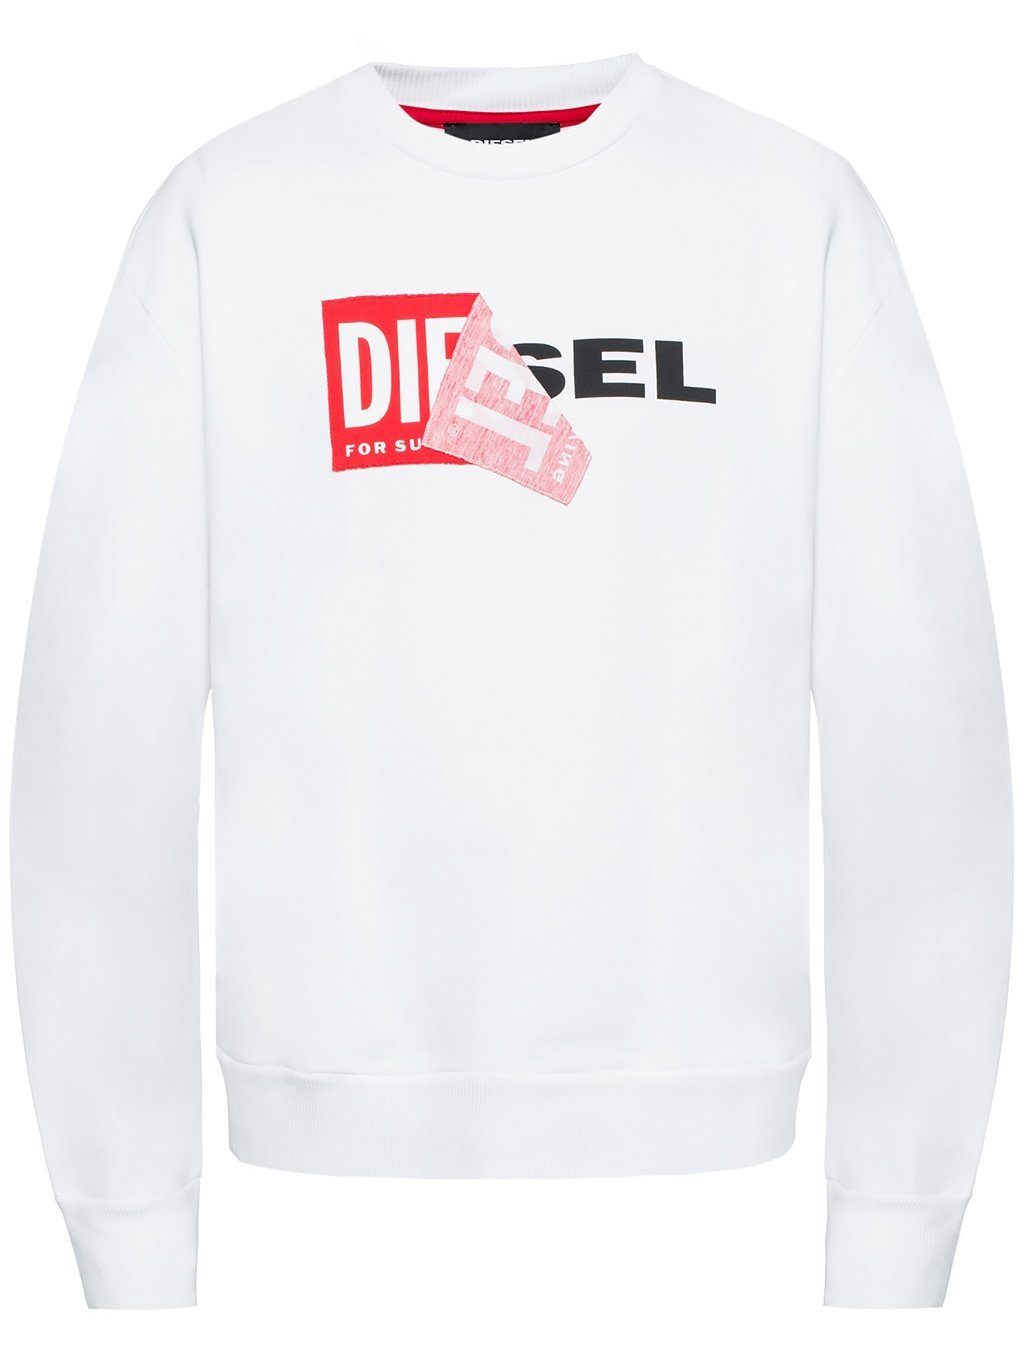 Diesel Sweatshirt Oversize Pullover S-SAMY Weiß